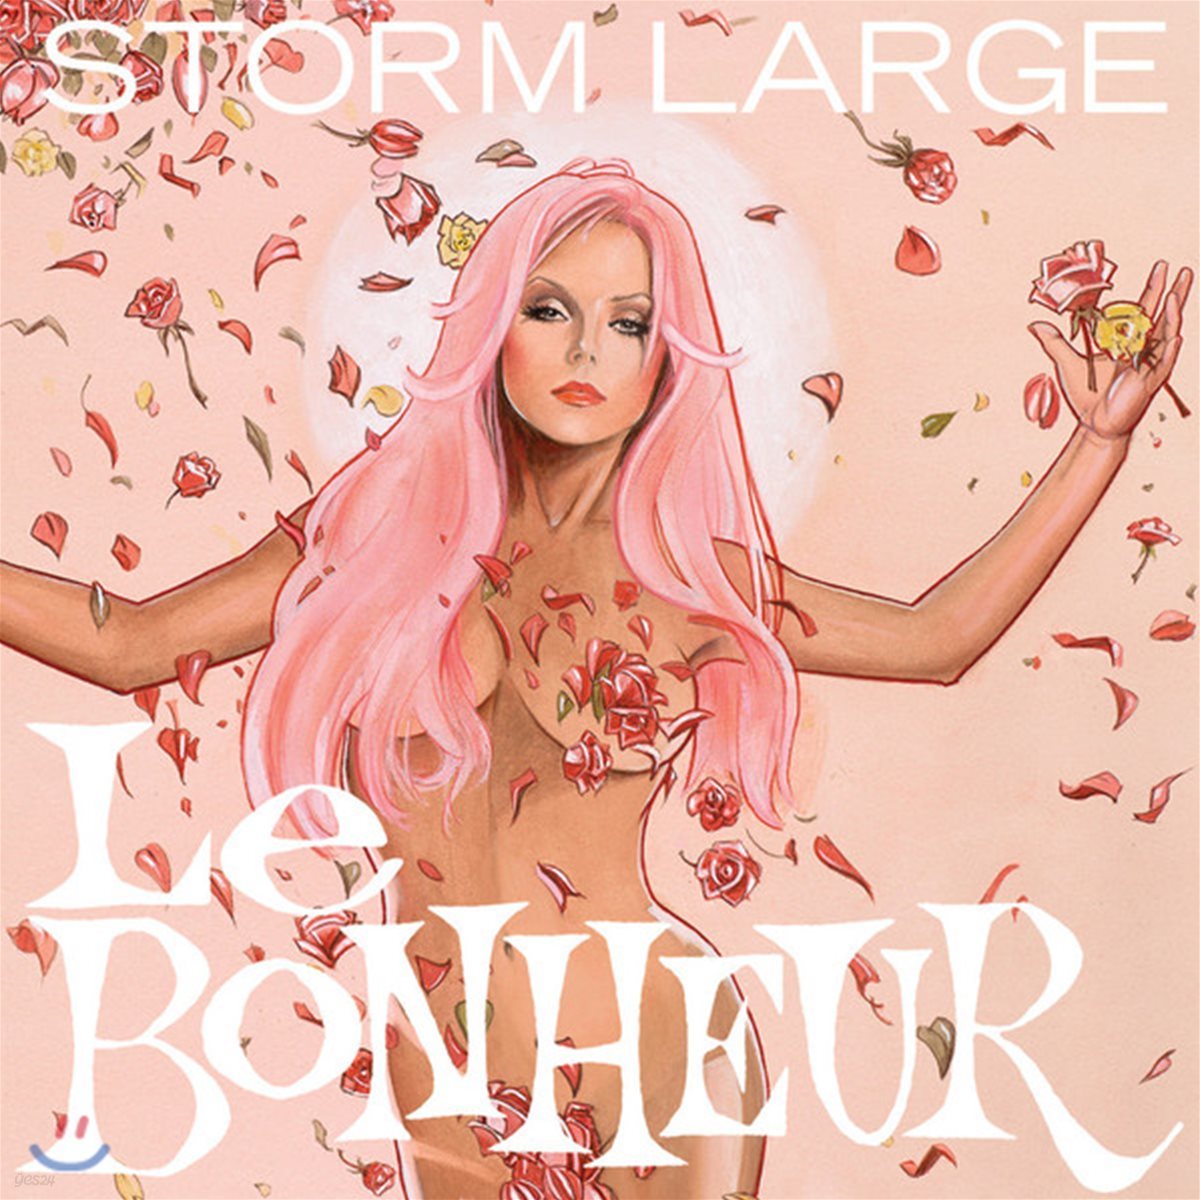 Storm Large (스톰 라지) - Le Bonheur